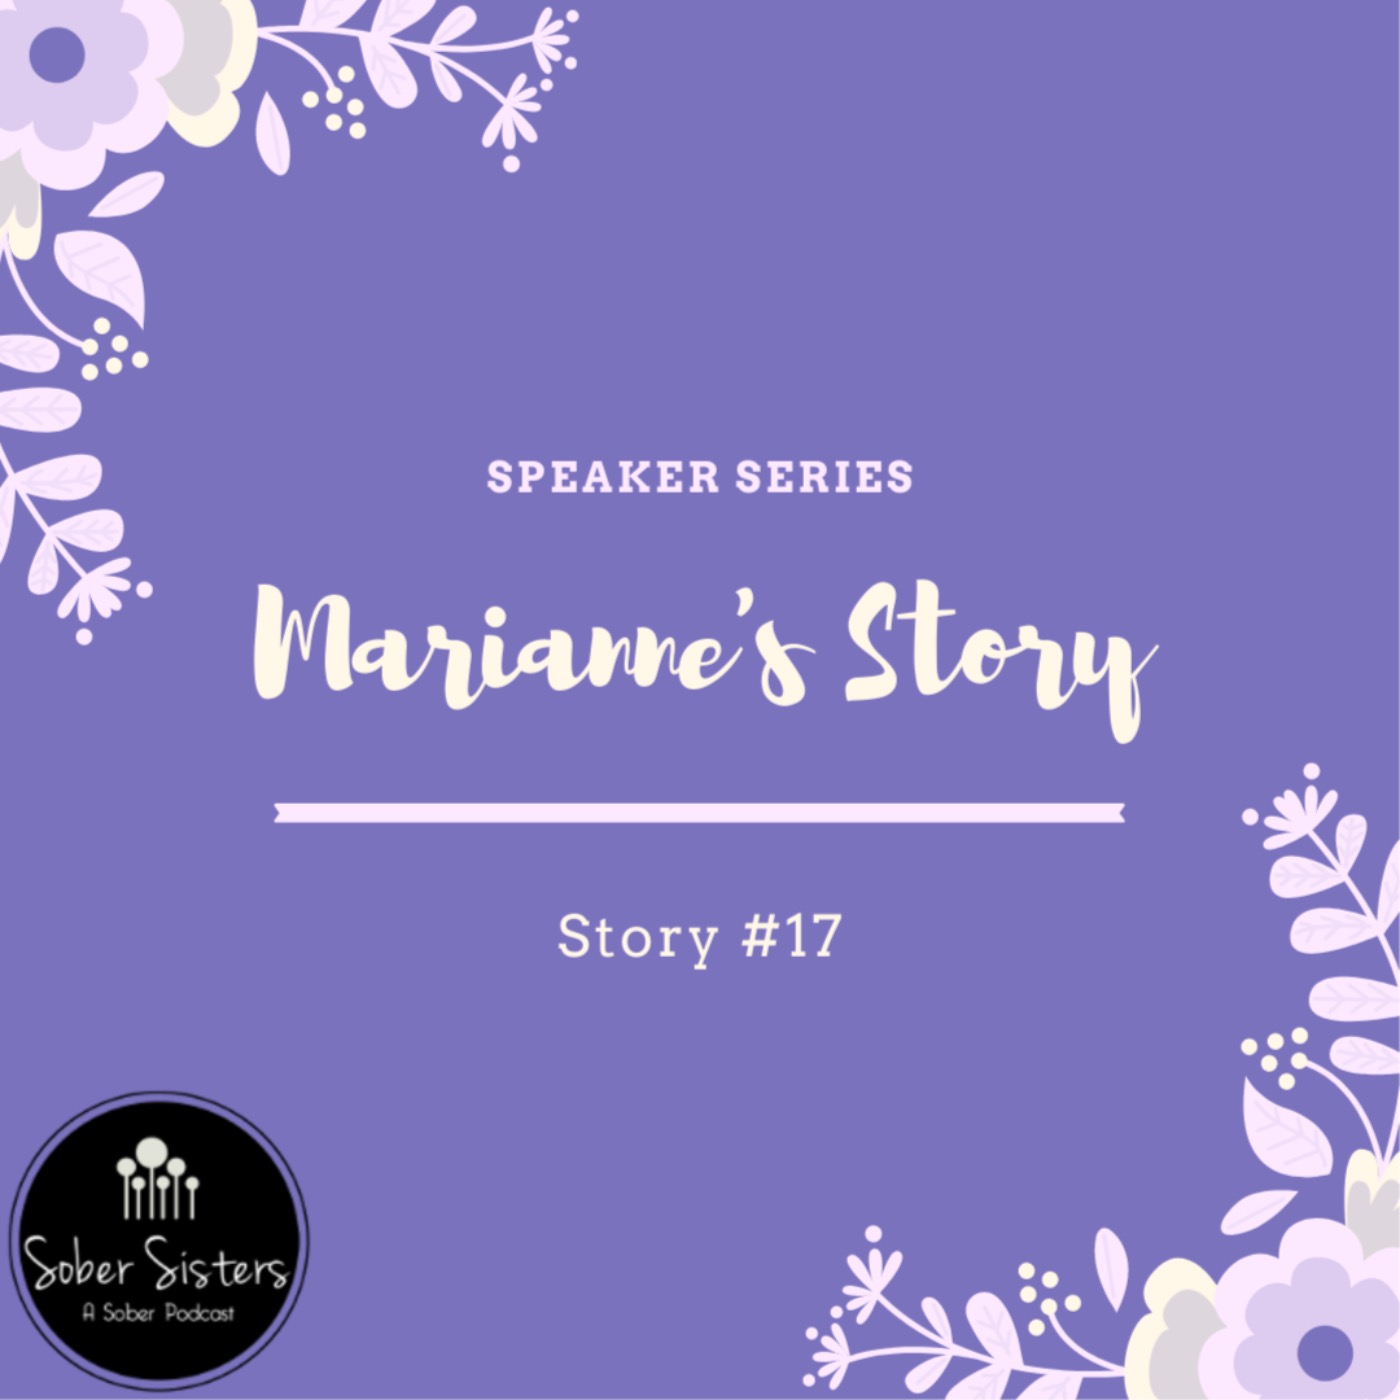 Speaker Series - Story #17